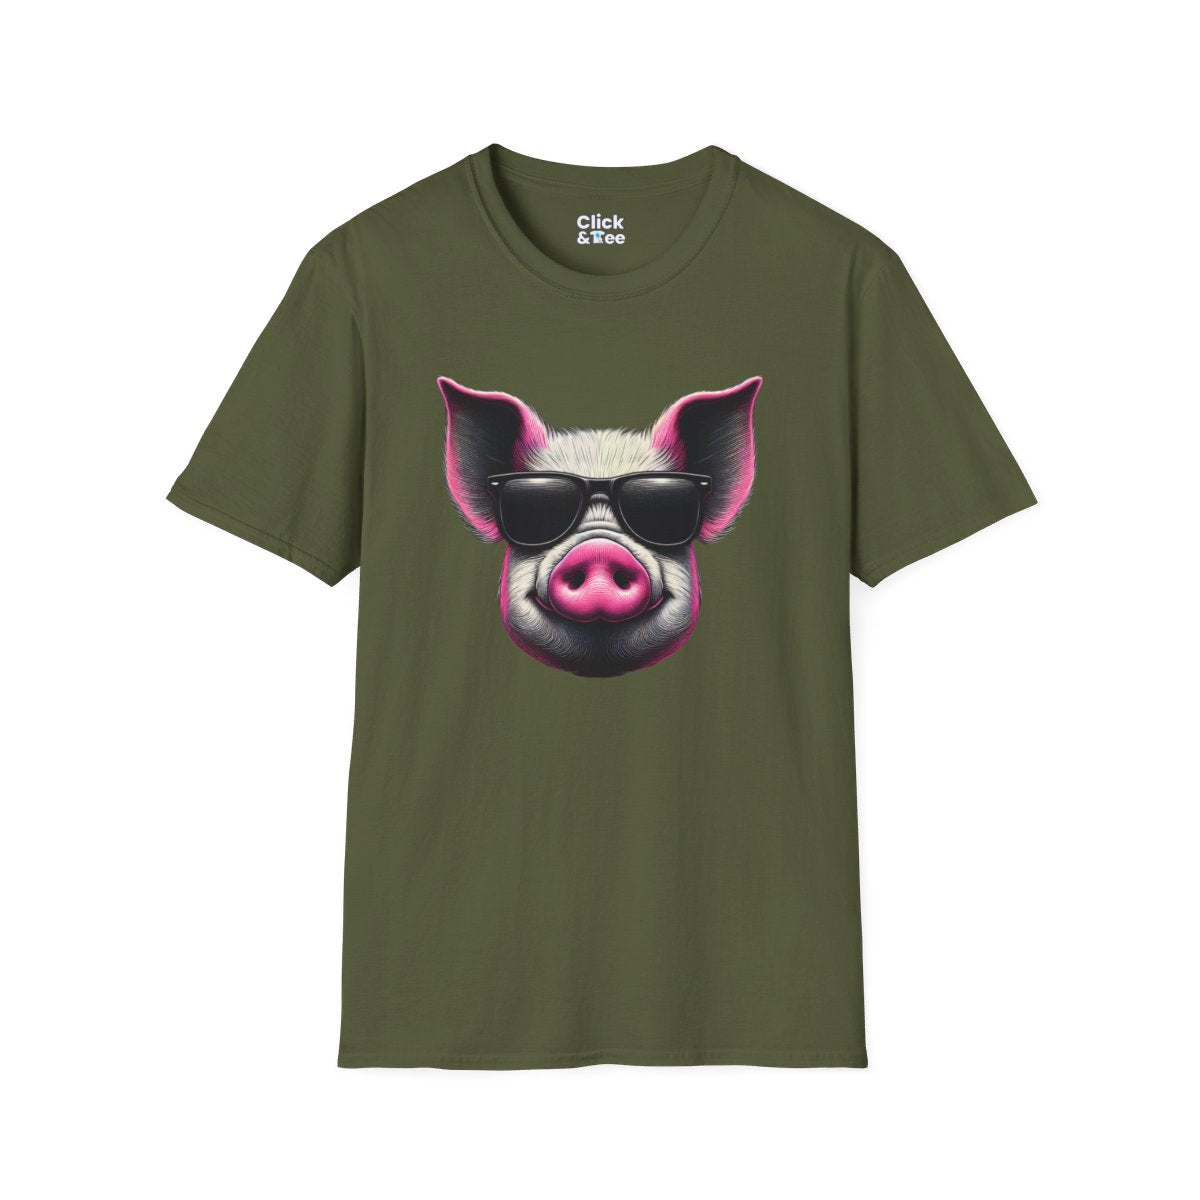 Graphic ArtPink Pig Face Unique T-Shirt Image 11